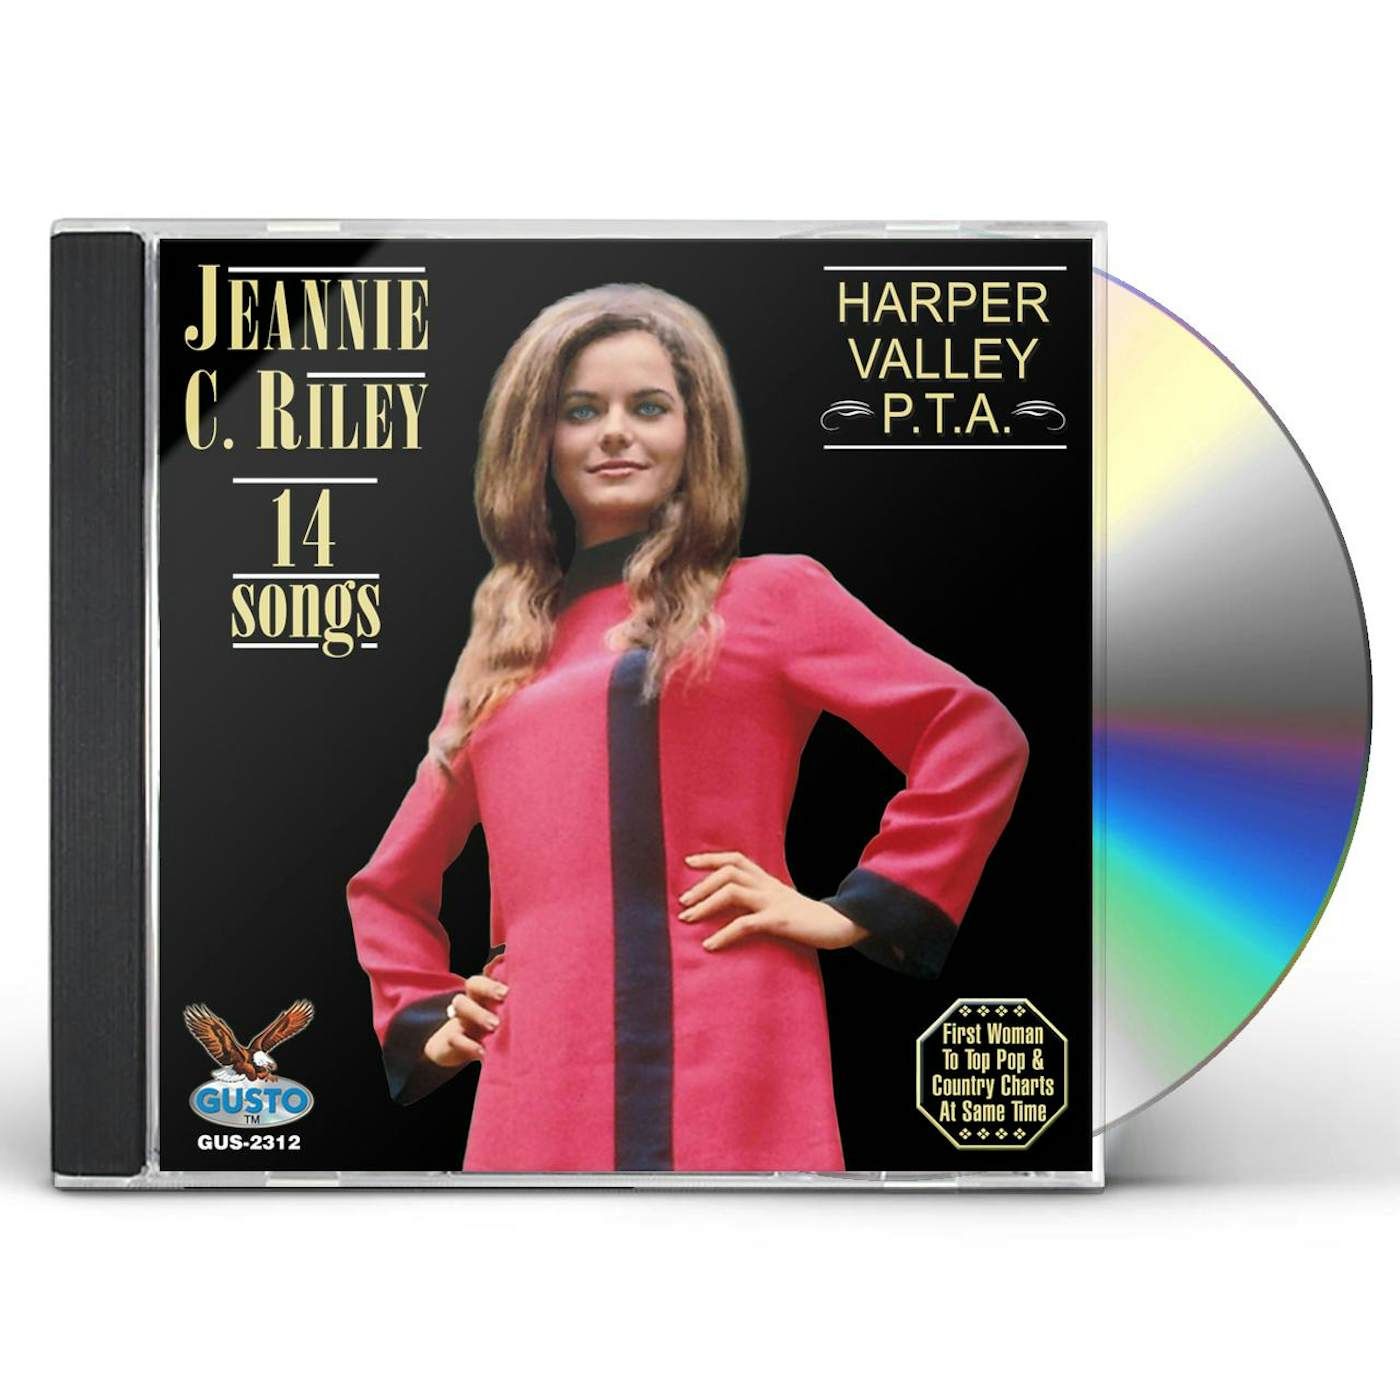 Jeannie C. Riley HARPER VALLEY PTA CD